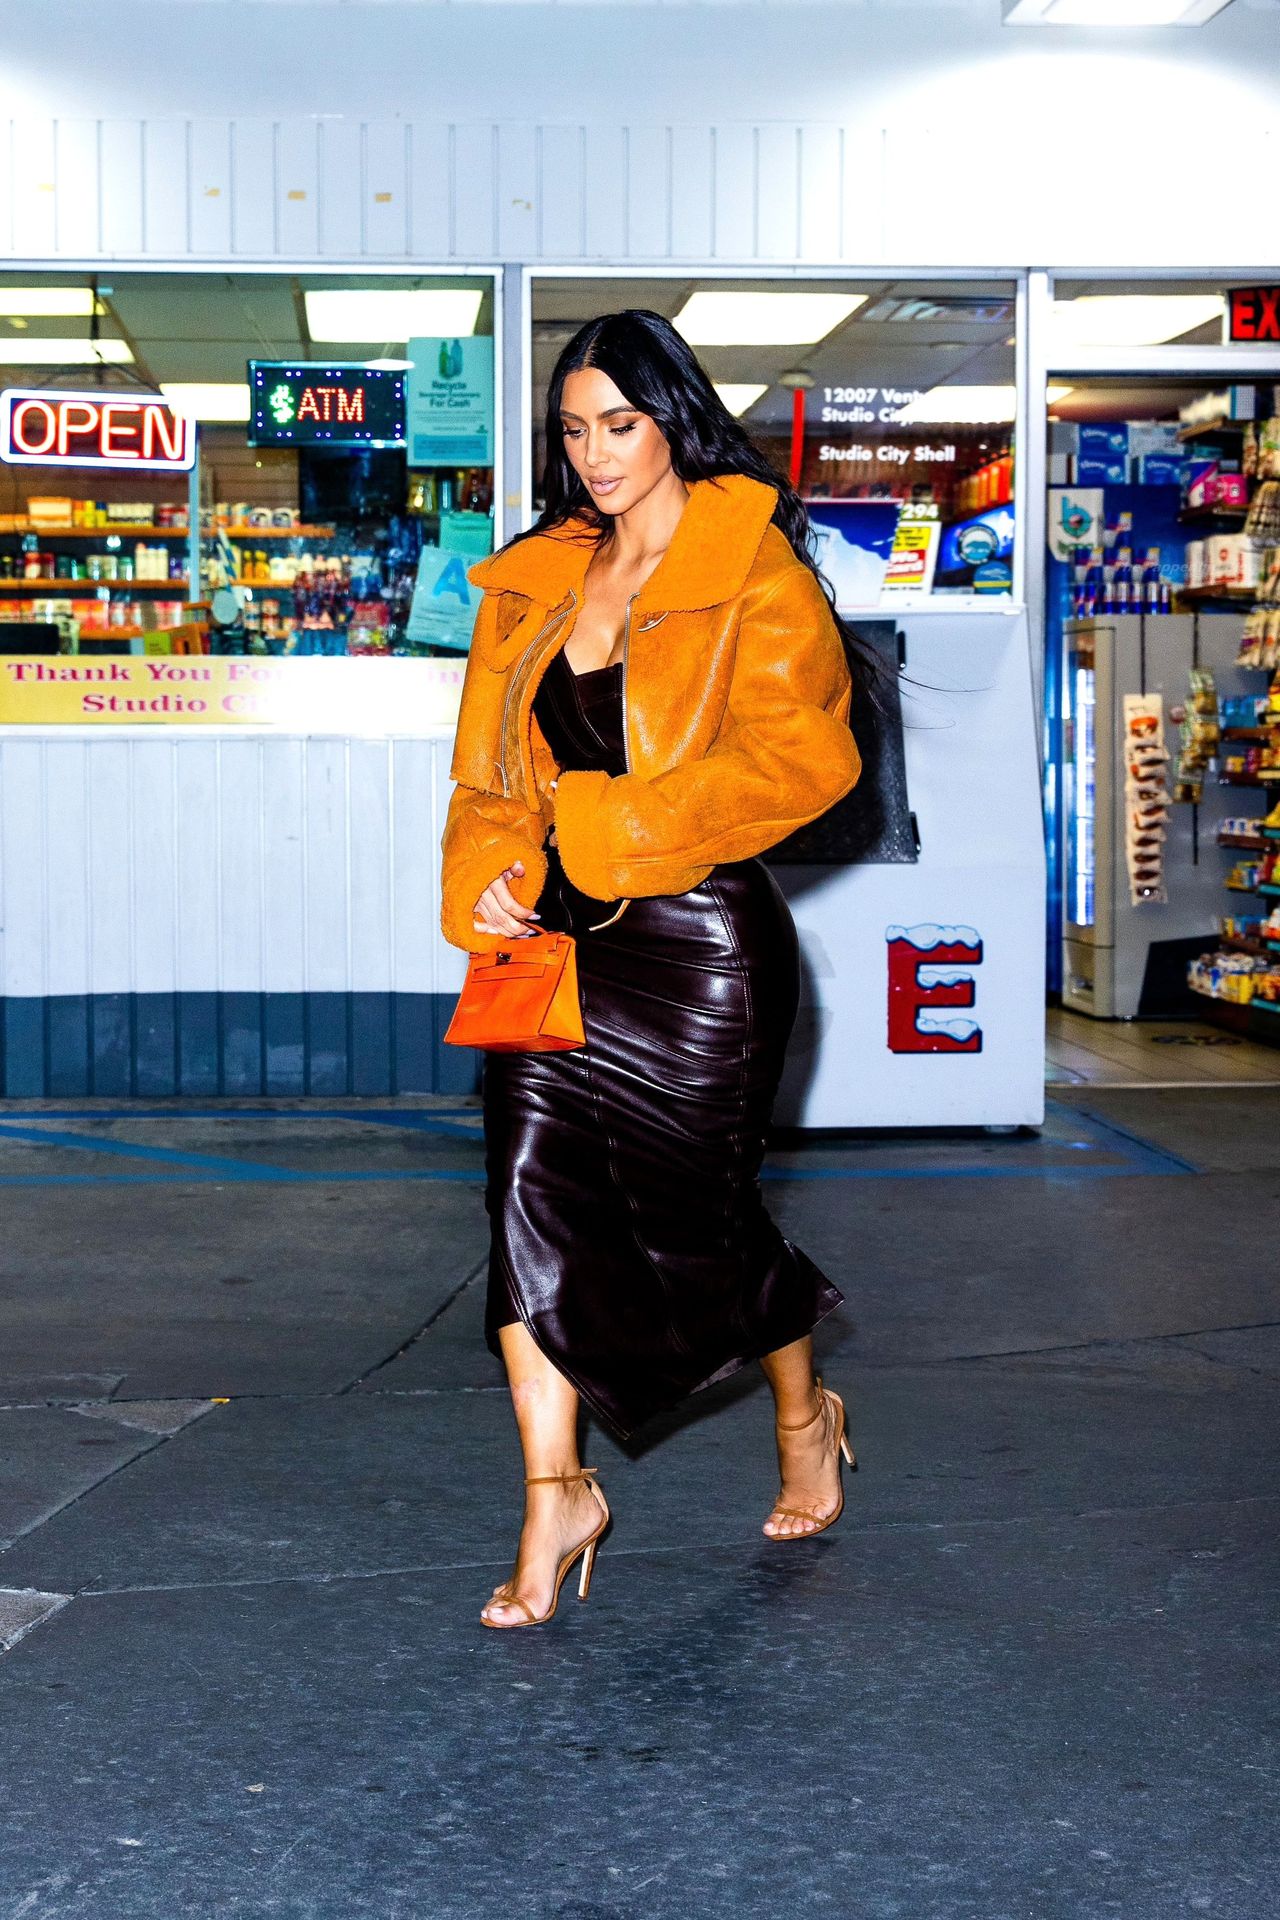 Kim-Kardashian-Sexy-The-Fappening-Blog-4.jpg